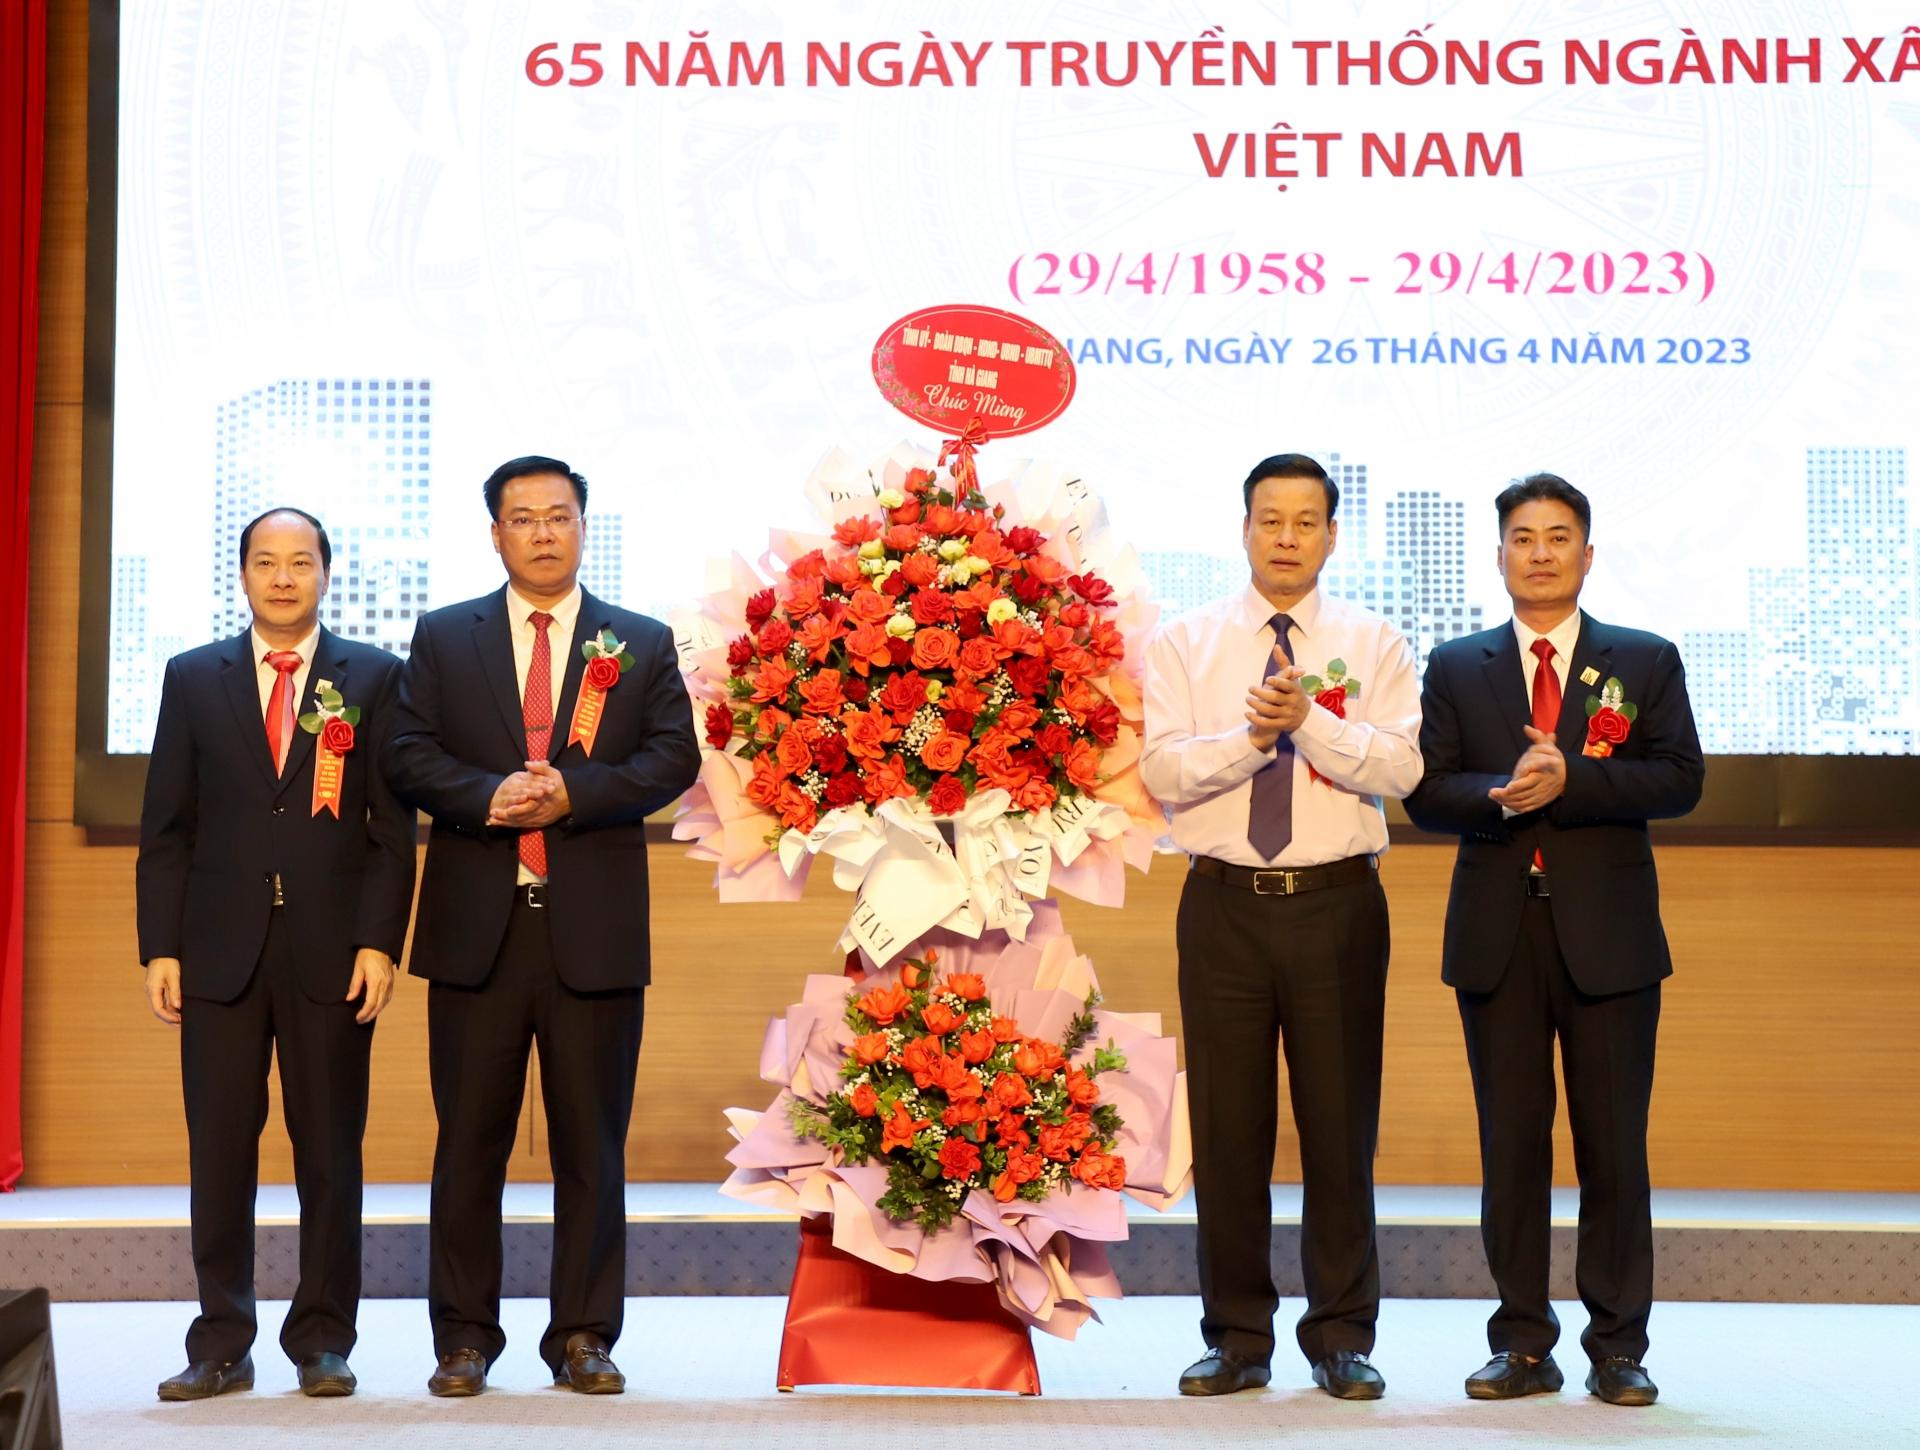 Chủ tịch UBND tỉnh Nguyễn Văn Sơn tặng lẵng hoa chúc mừng Sở Xây dựng nhân kỷ niệm 65 năm ngày truyền thống ngành Xây dựng Việt Nam.